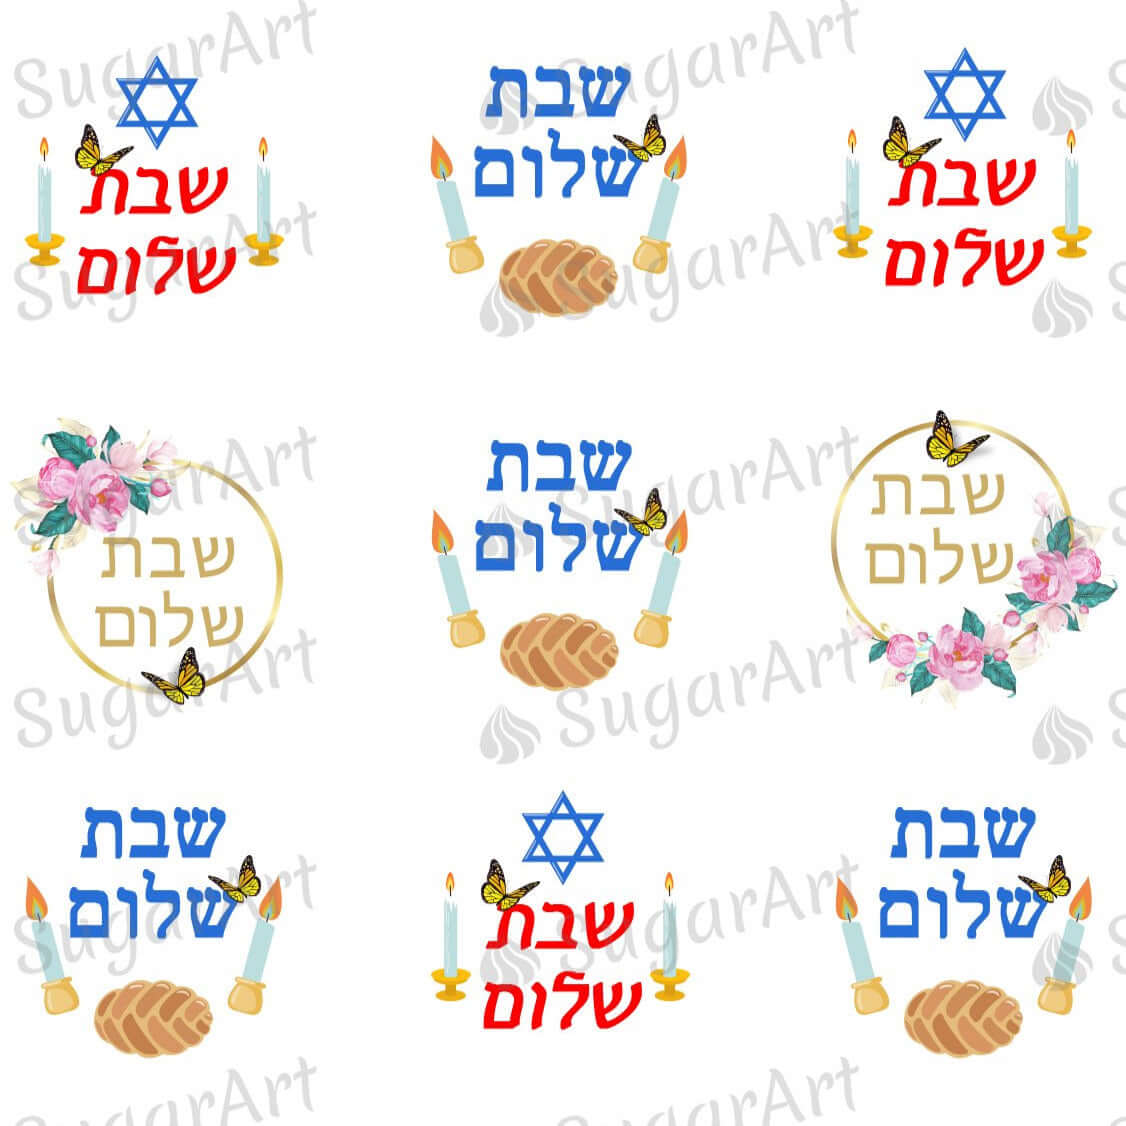 Shabbat Shalom Cartão Saudação Texto Hebraico Shabbat Shalom Israel Judaica  vetor(es) de stock de ©grafnata 184328464